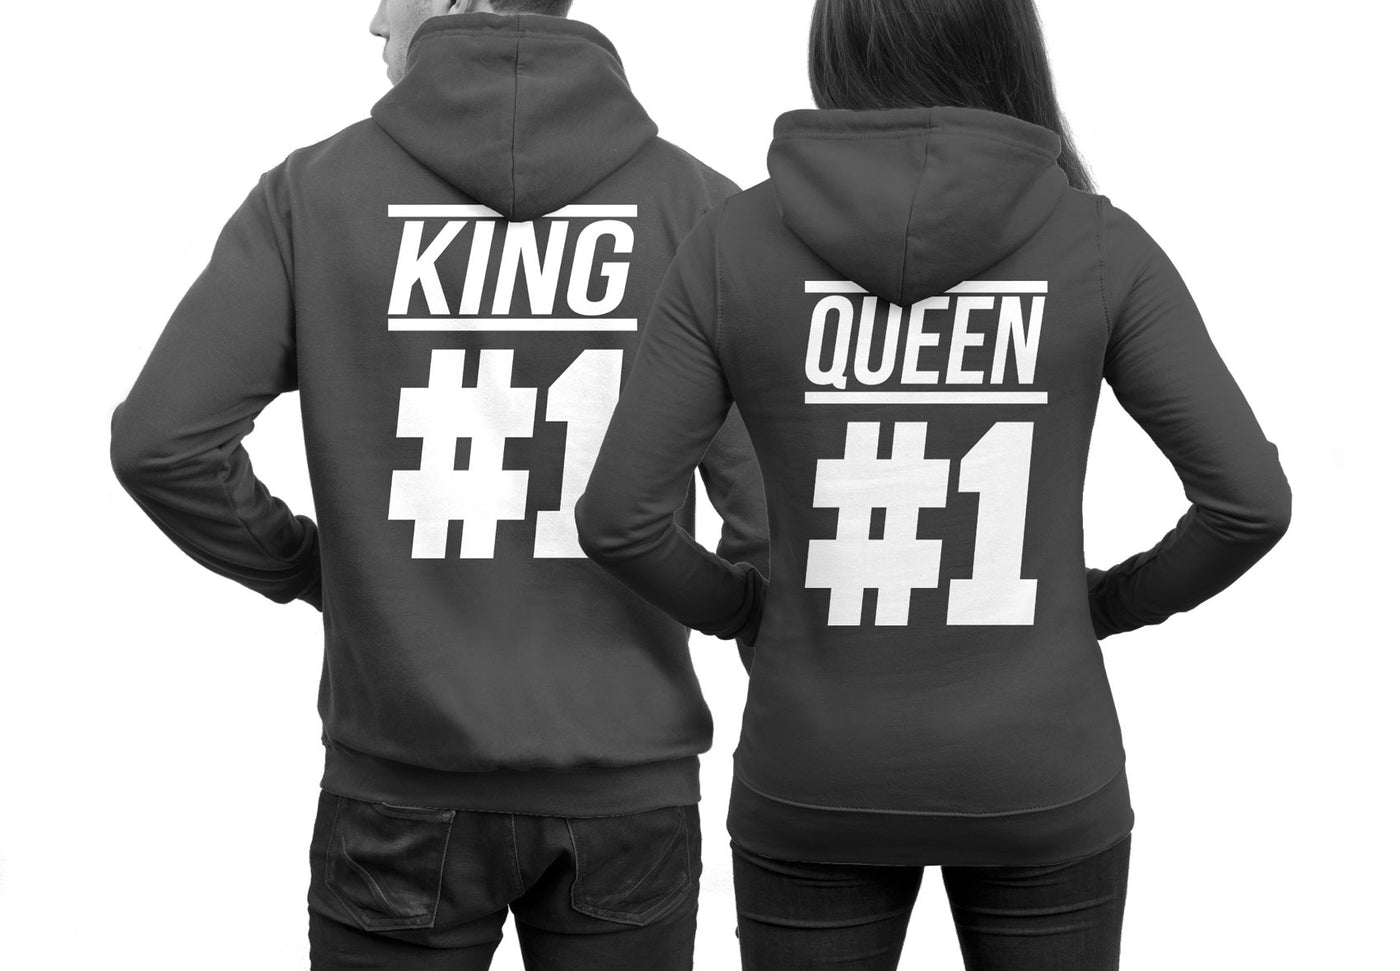 king-1-queen-1-hoodies-dunkelgrauft96hod